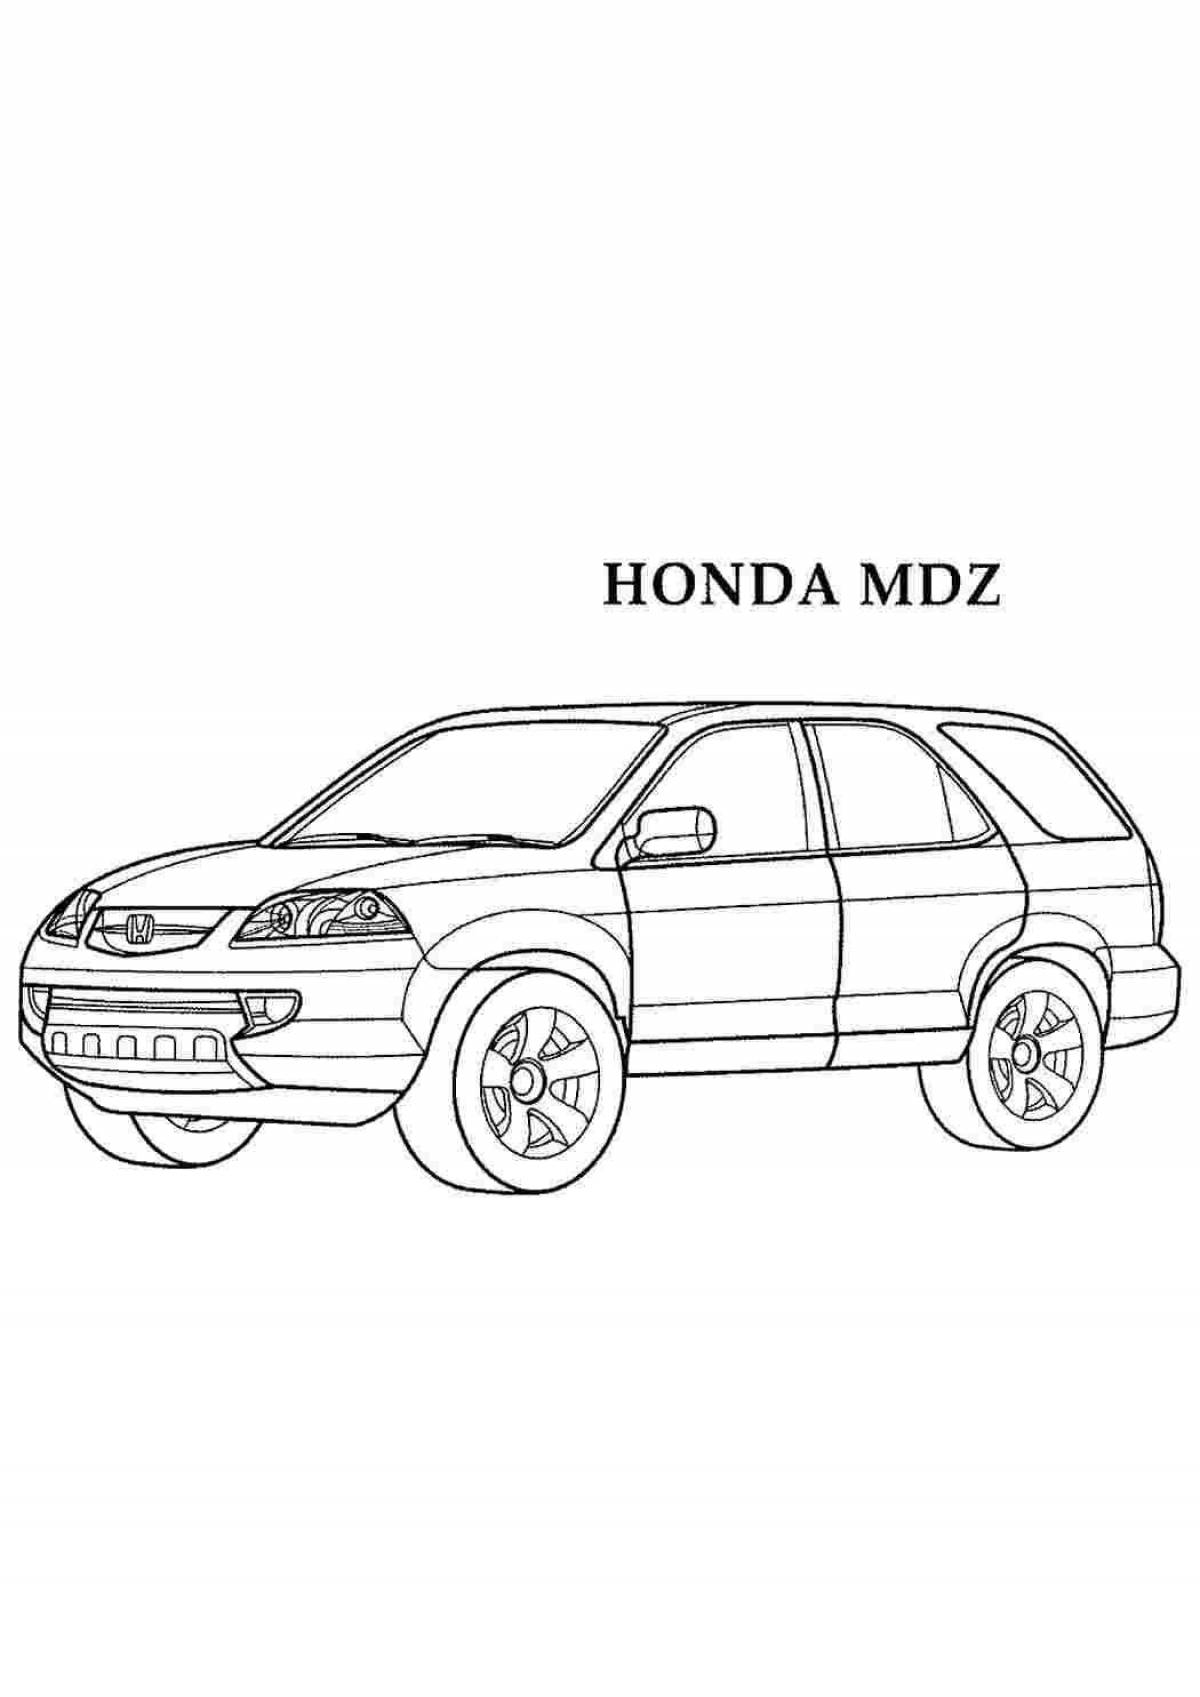 Honda srv bright colors